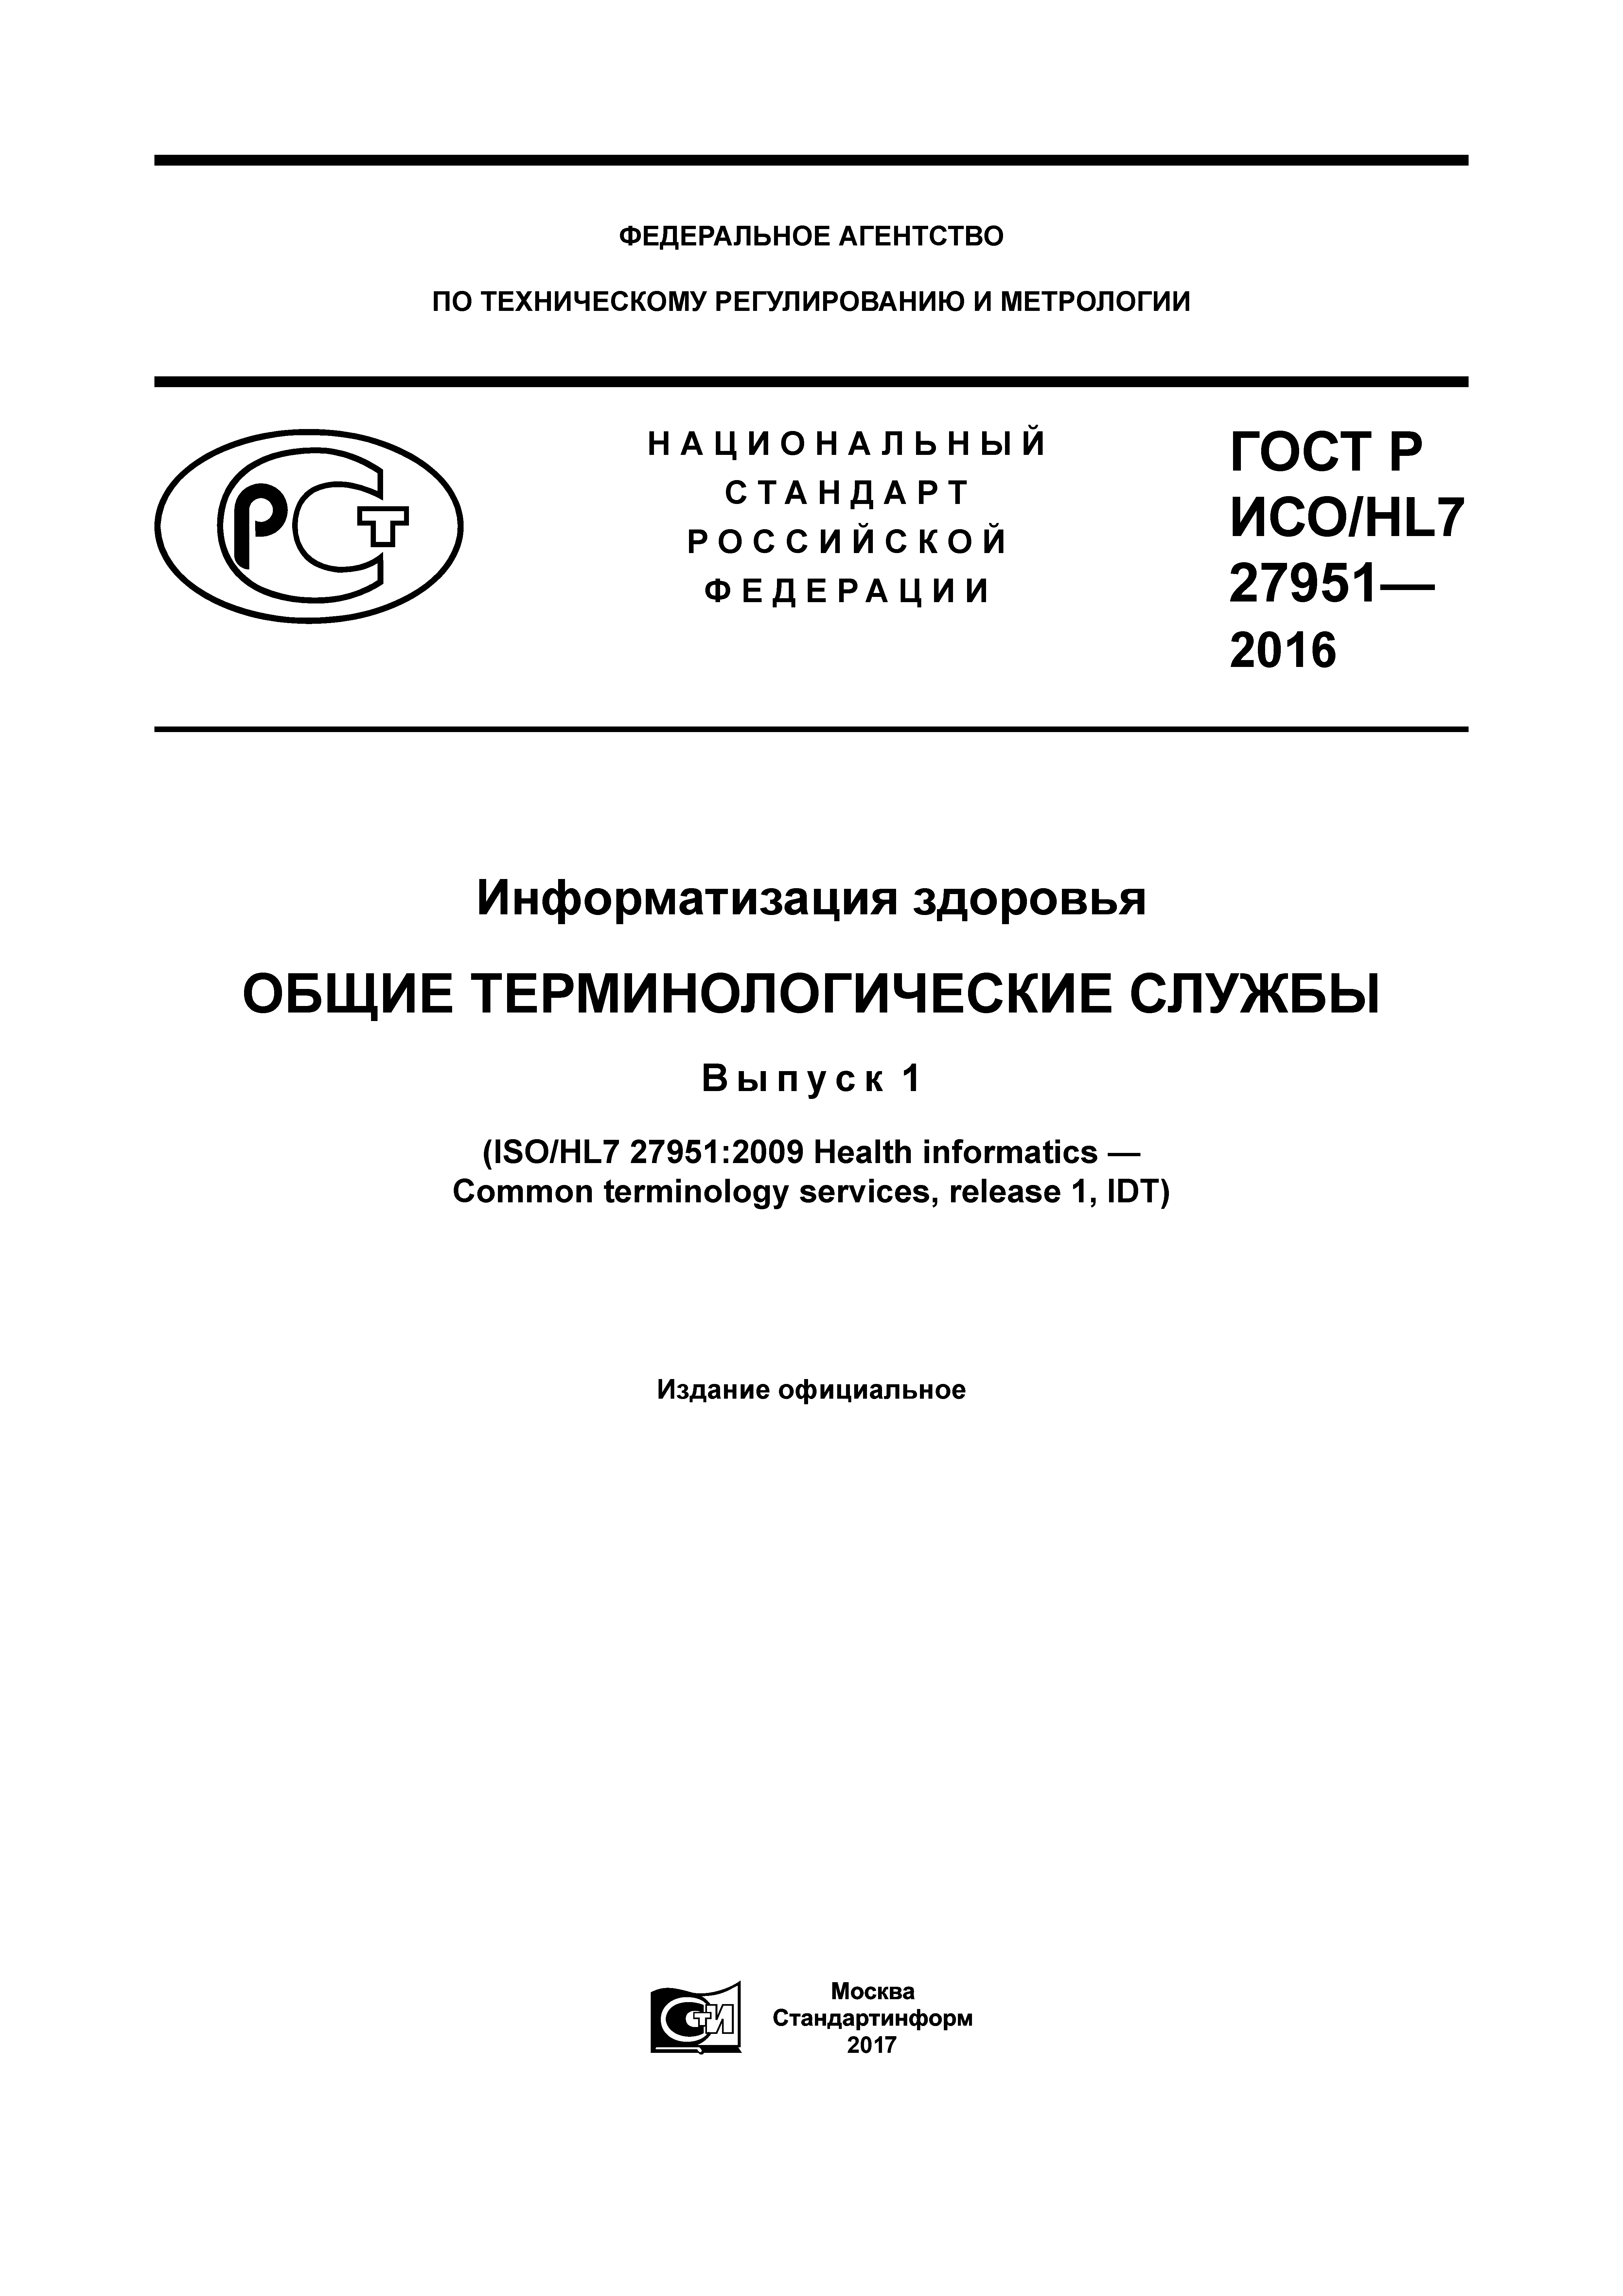 ГОСТ Р ИСО/HL7 27951-2016